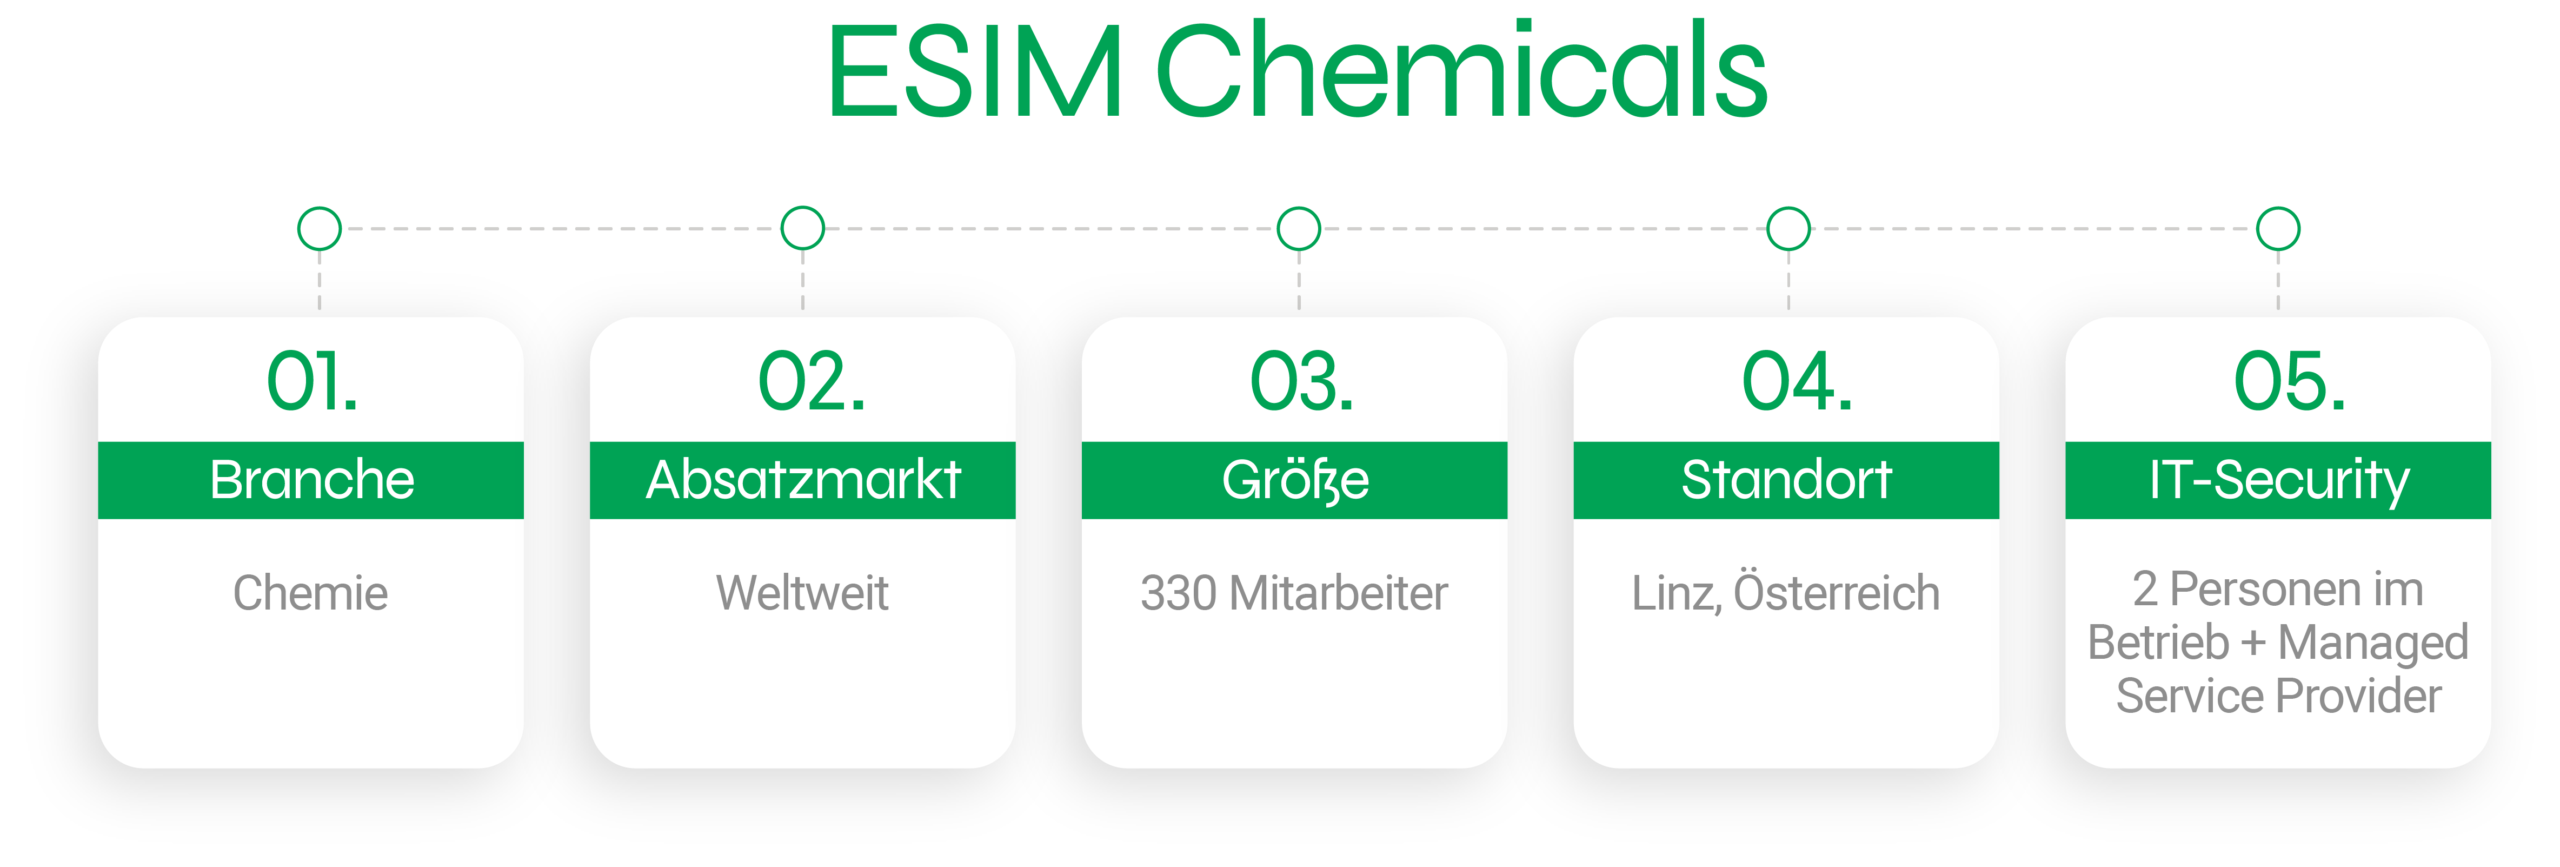 ESIM Chemicals - 